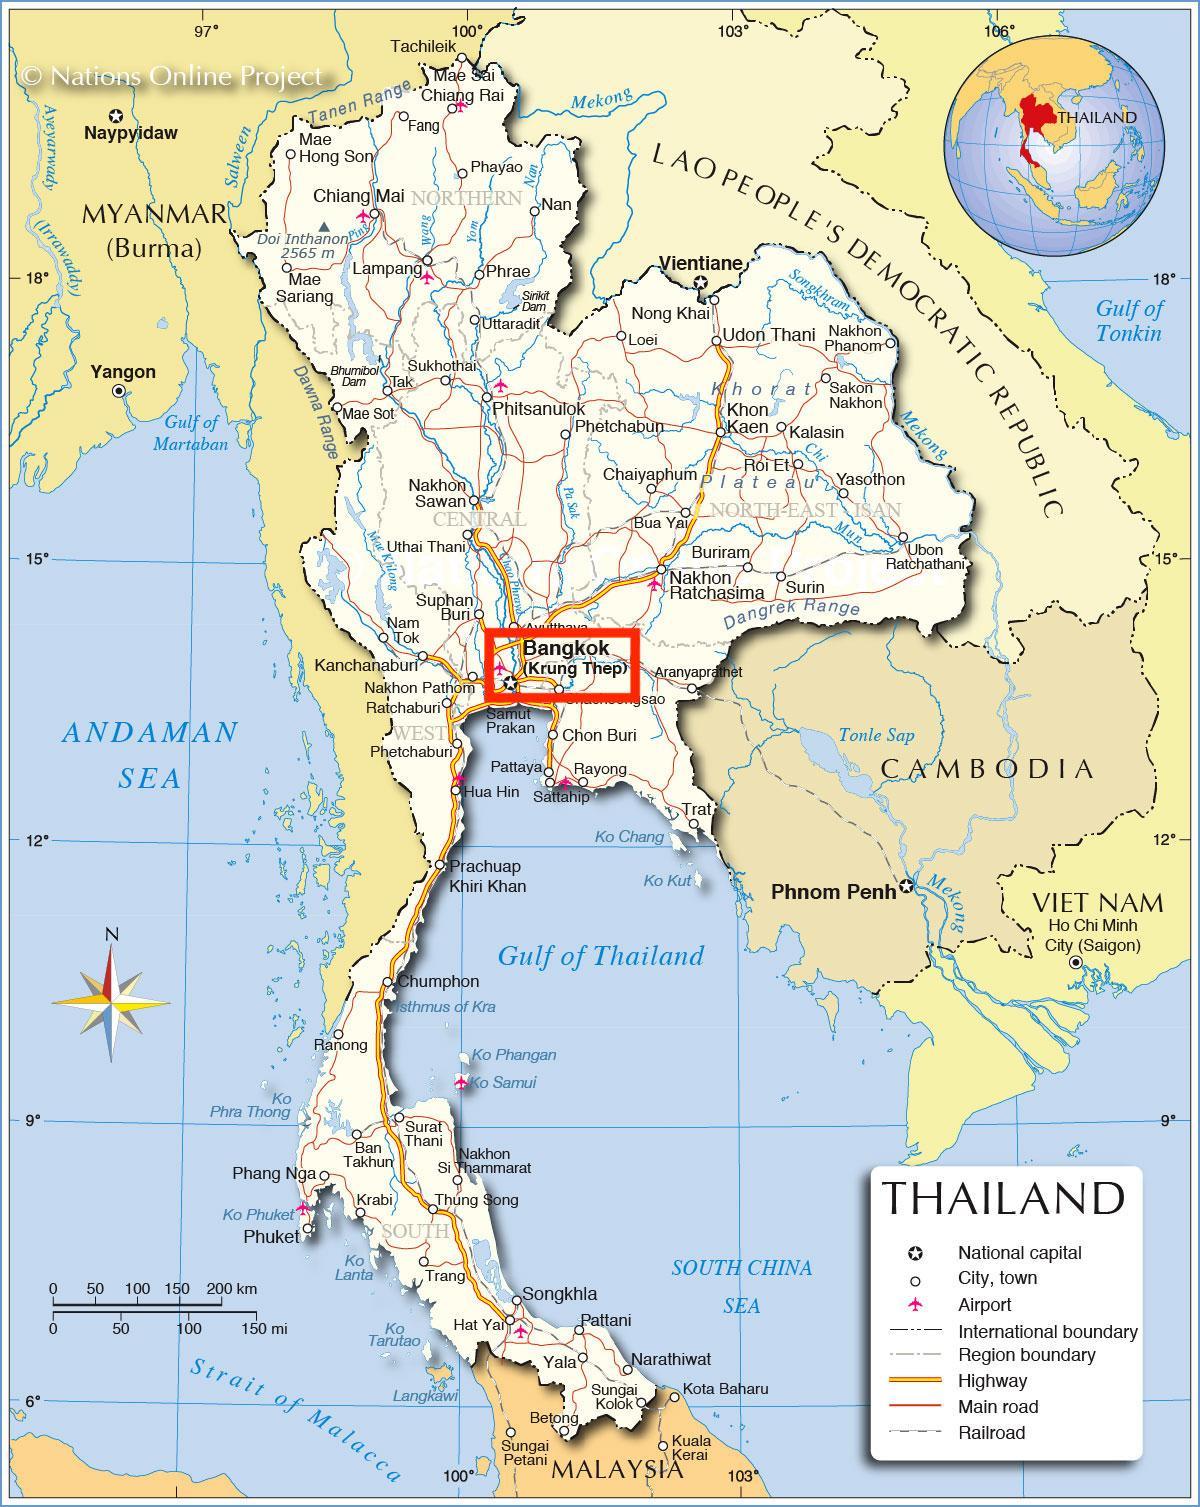 Bangkok (Krung Thep) en el mapa de Tailandia